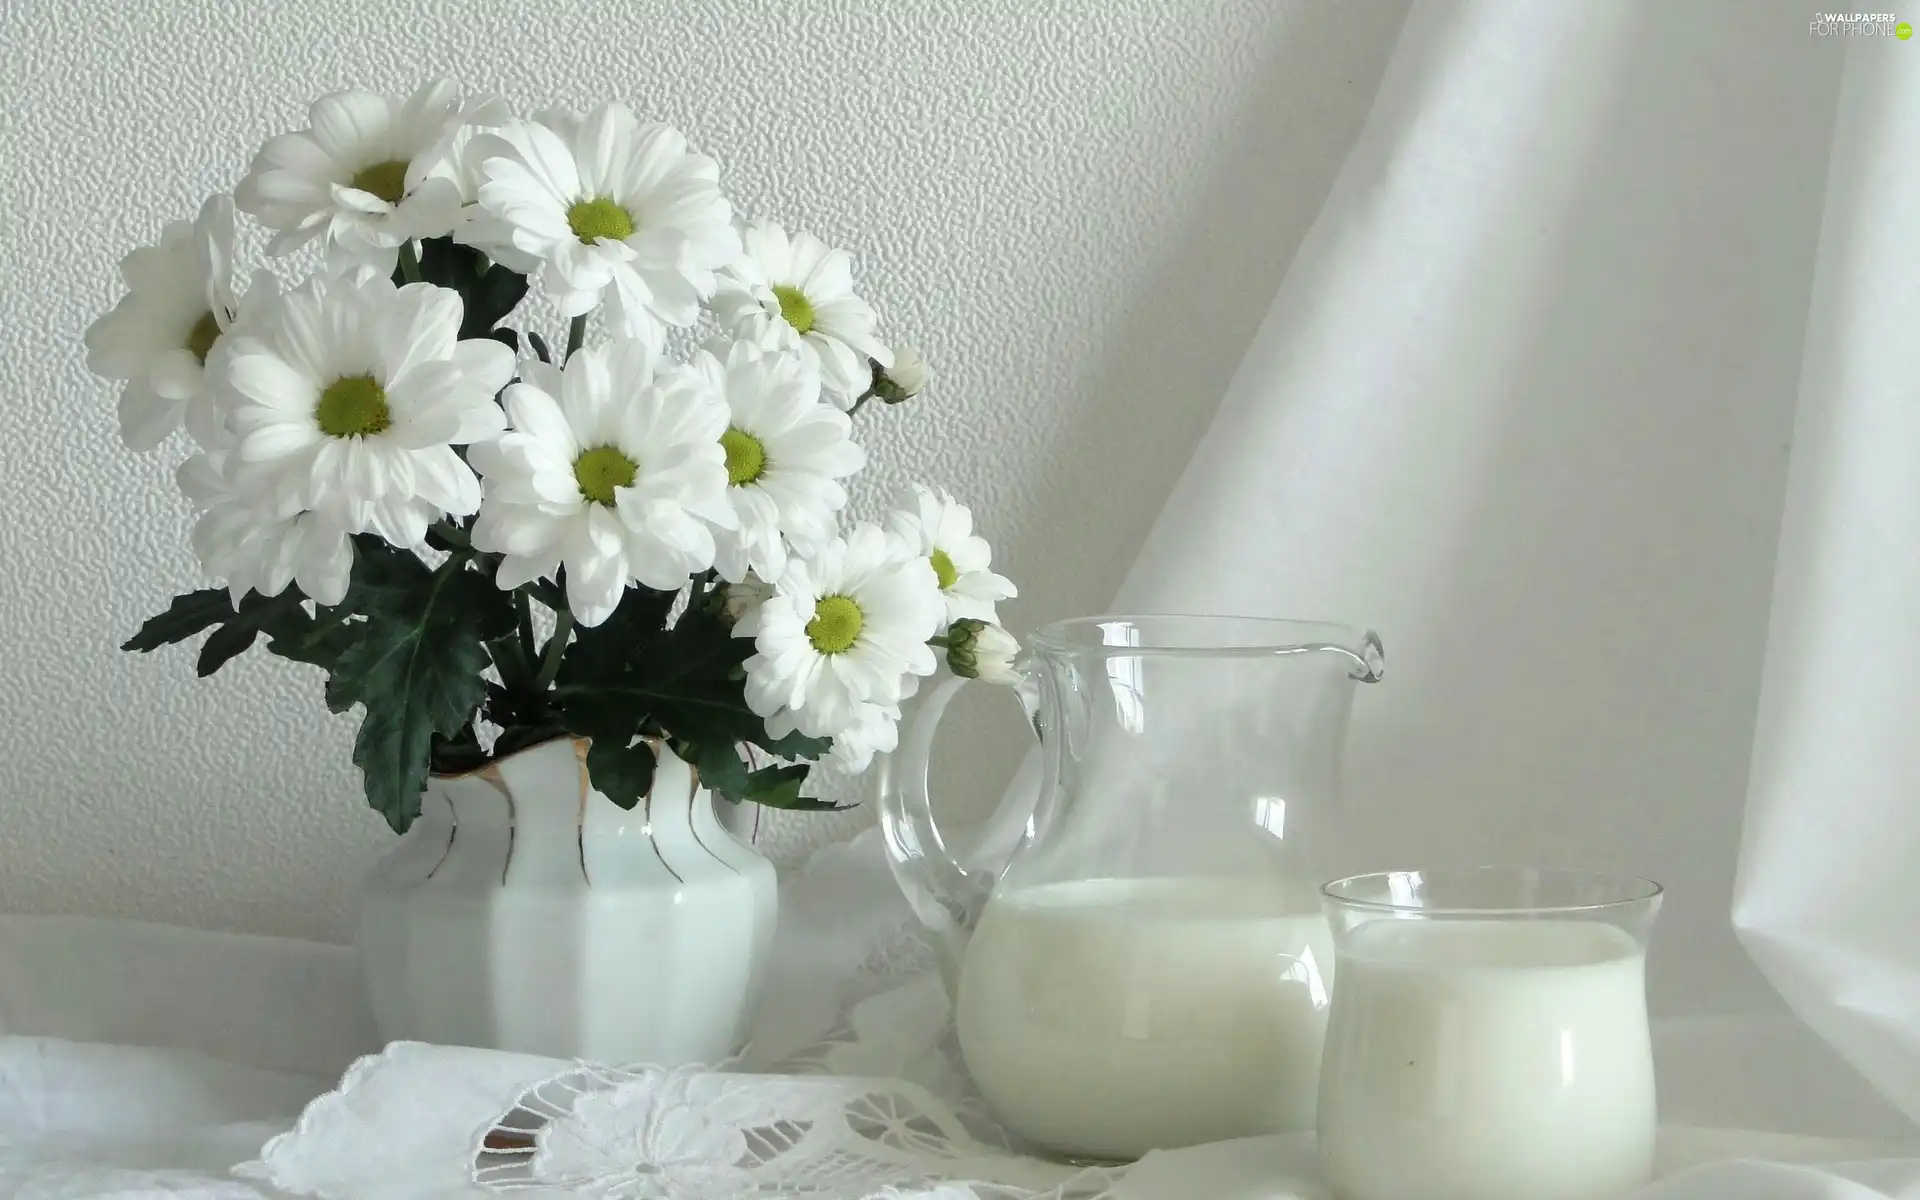 bouquet, jug, milk, napkin, flowers, White